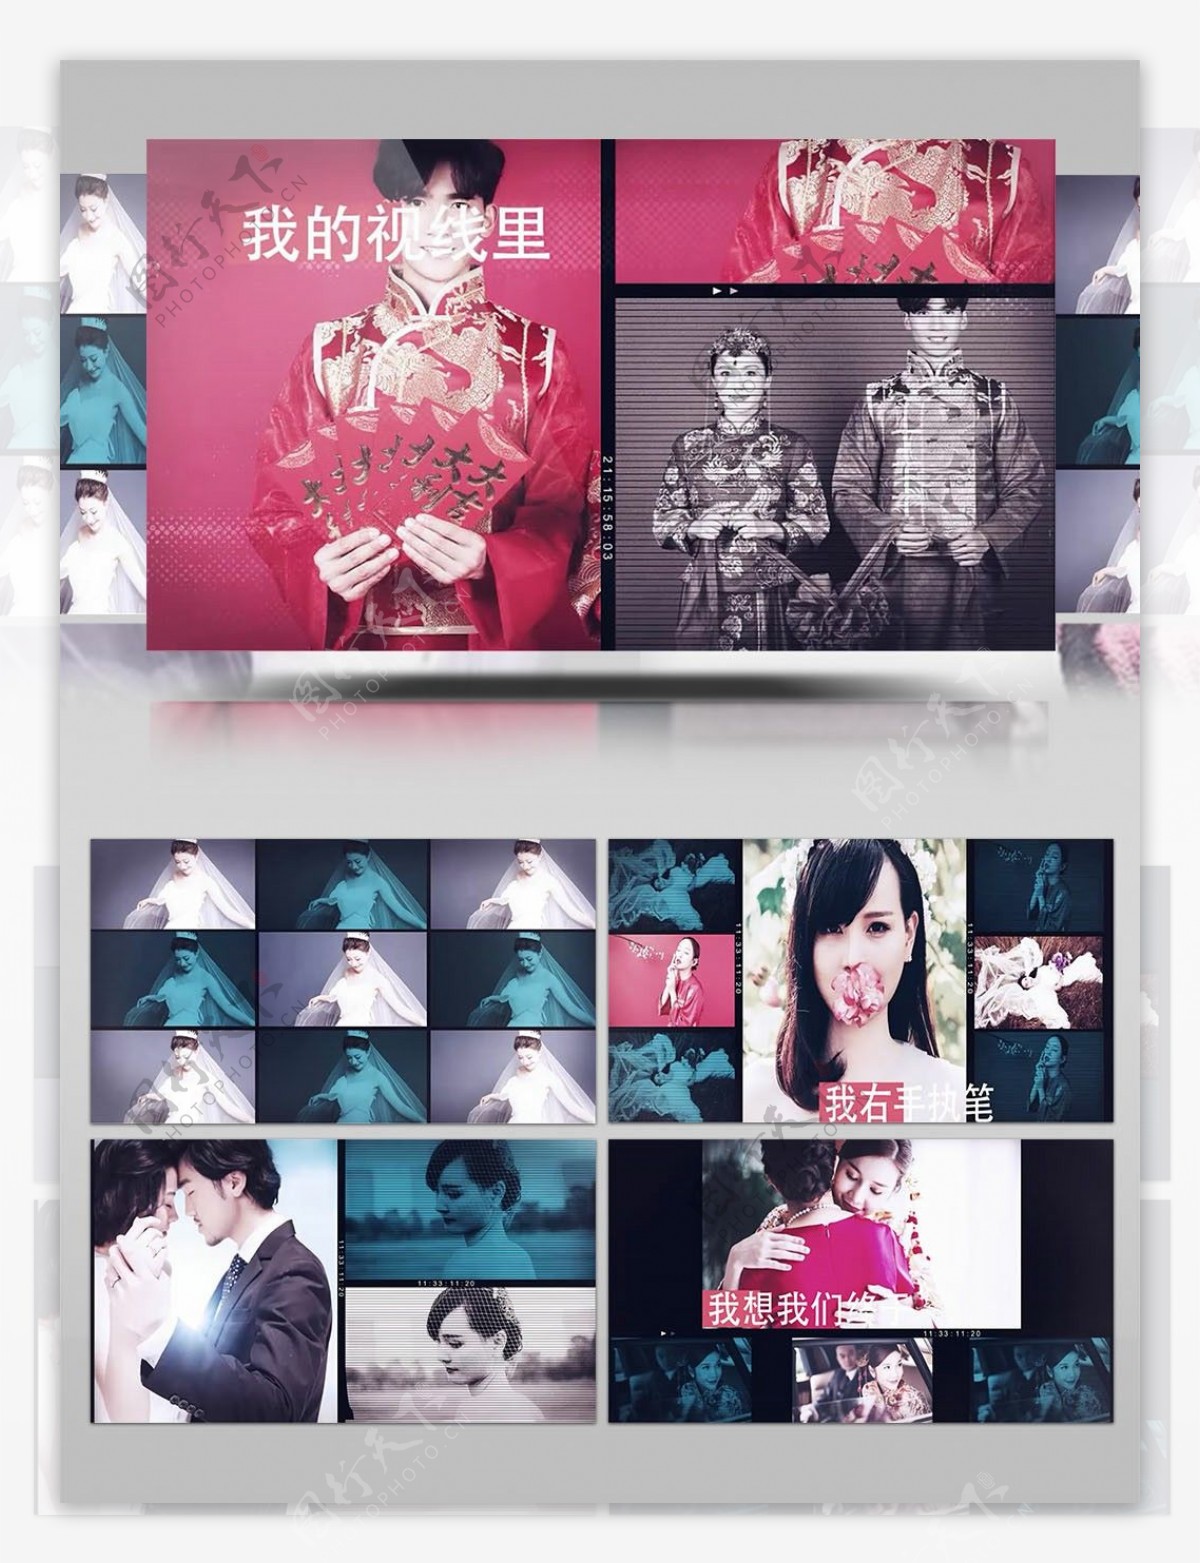 多样版式设计婚礼画面内容分屏展示AE模板